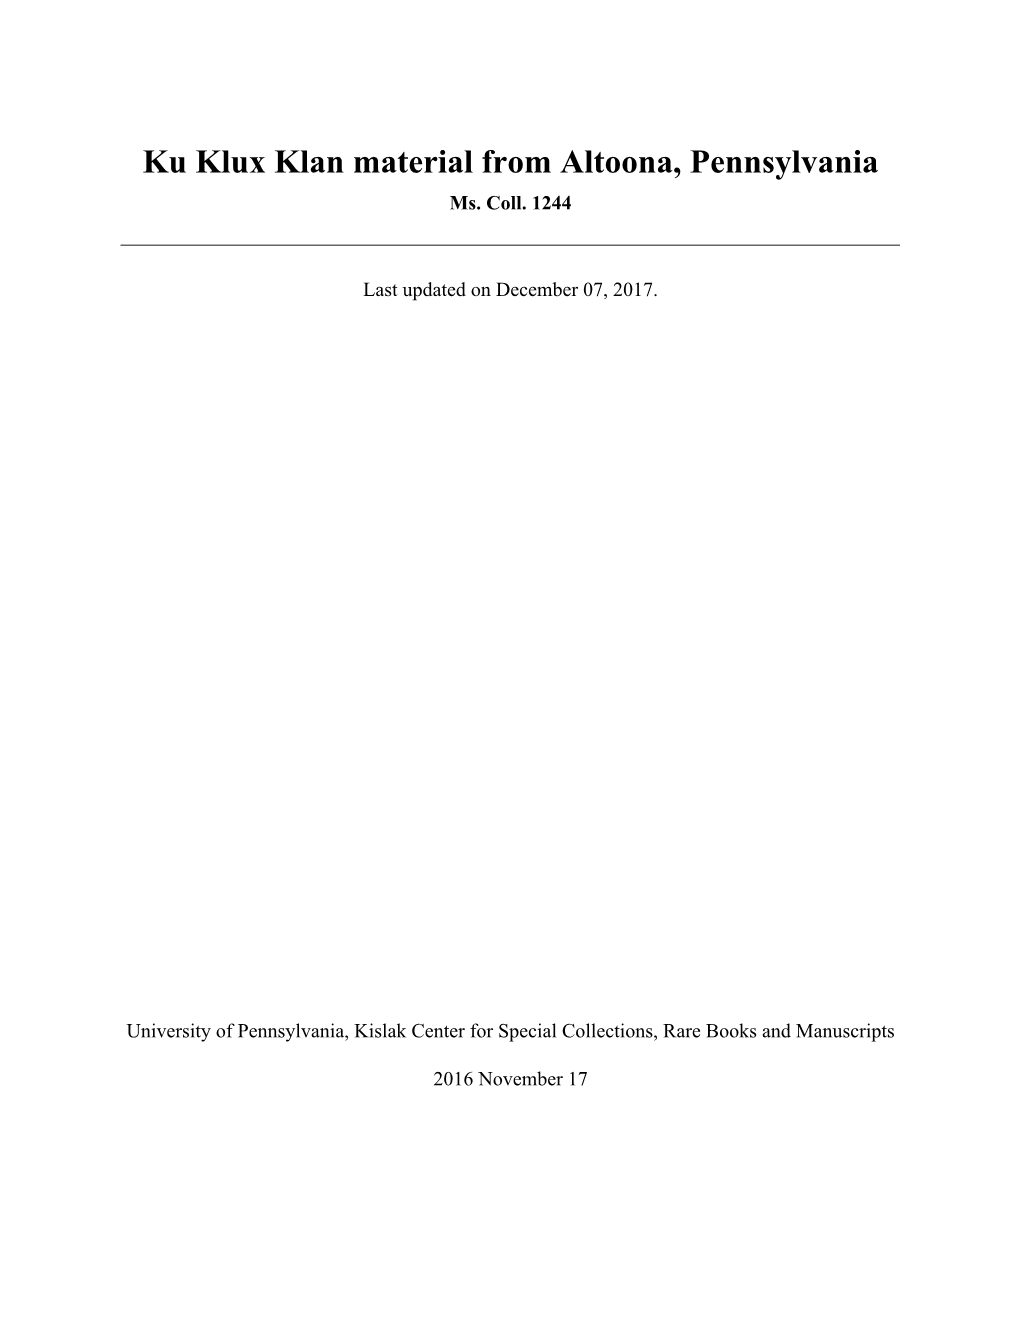 Ku Klux Klan Material from Altoona, Pennsylvania Ms